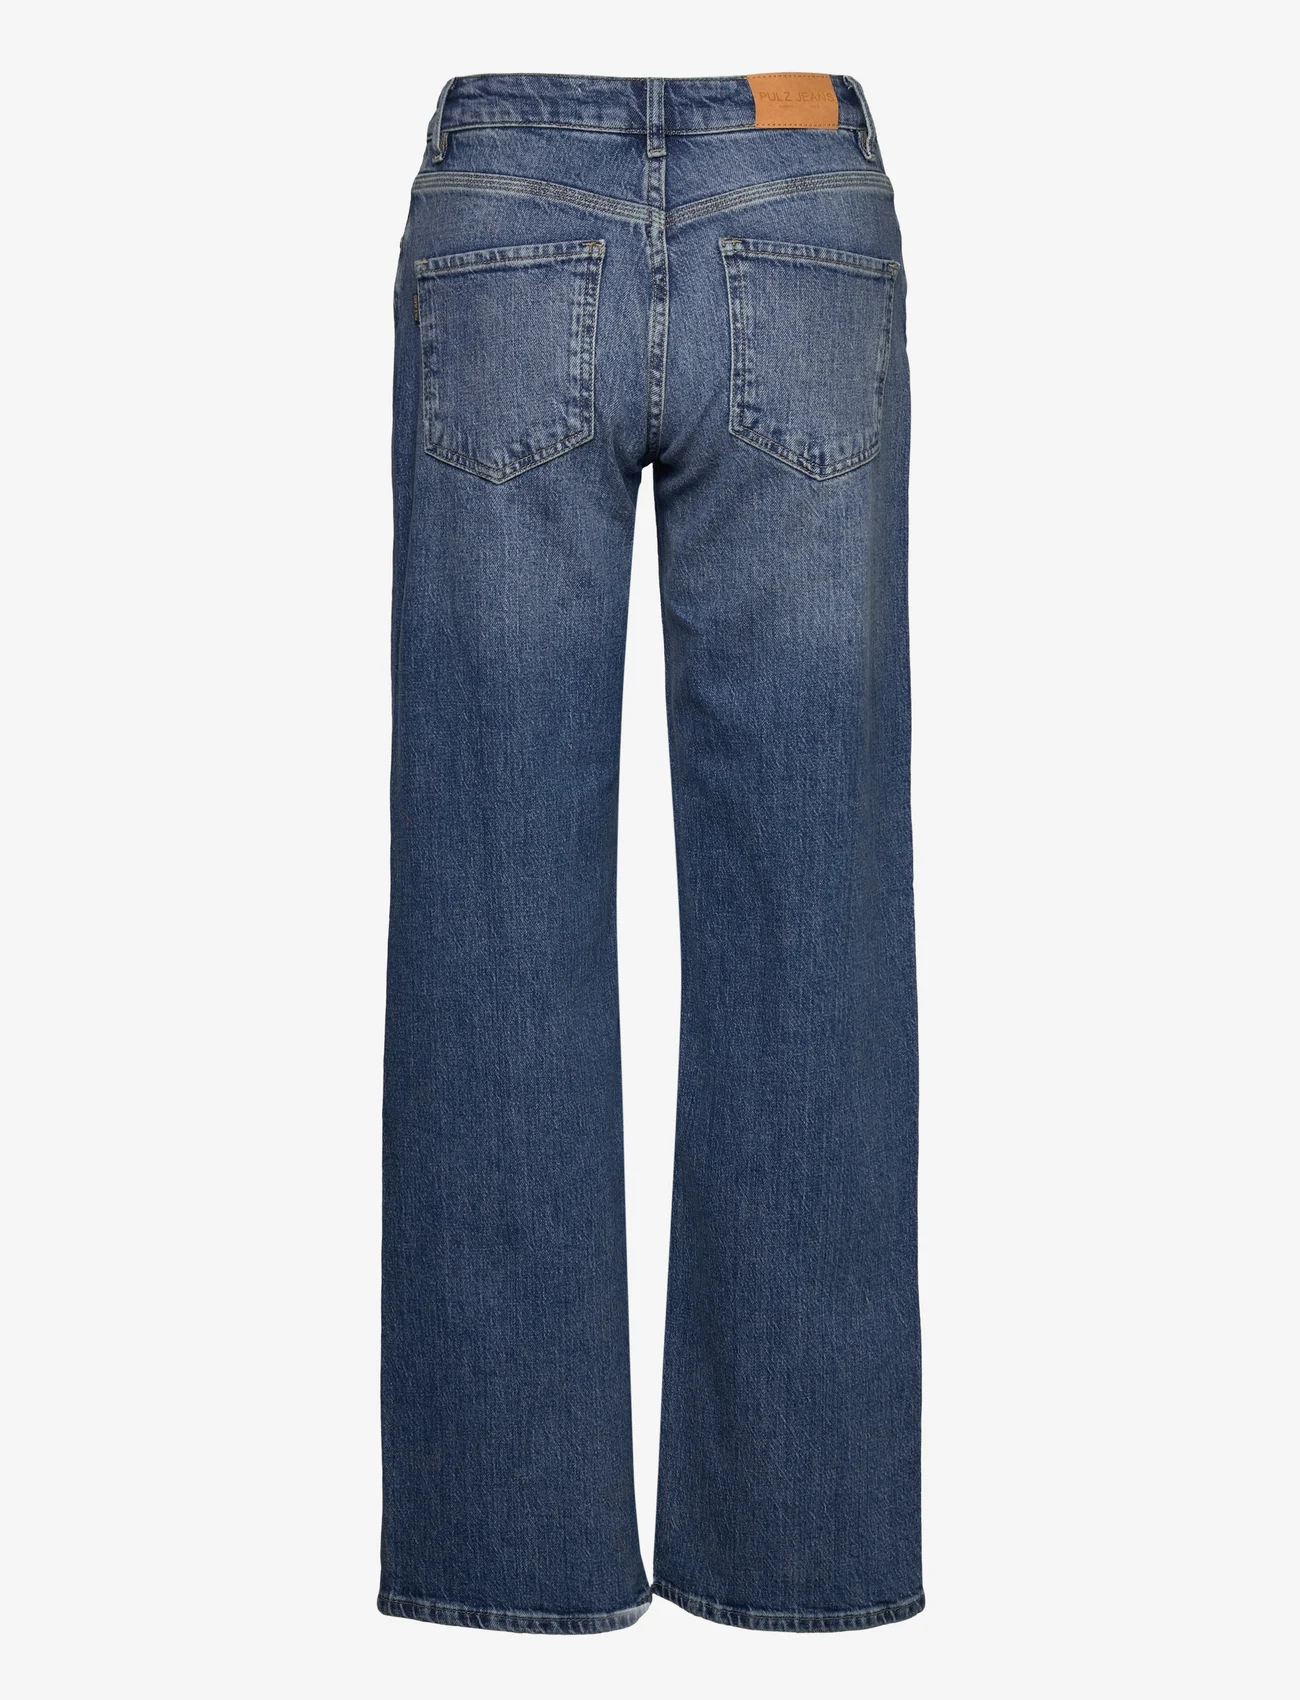 Pulz Jeans - PZVEGA HW Jeans Wide Leg - leveälahkeiset farkut - medium blue denim - 1